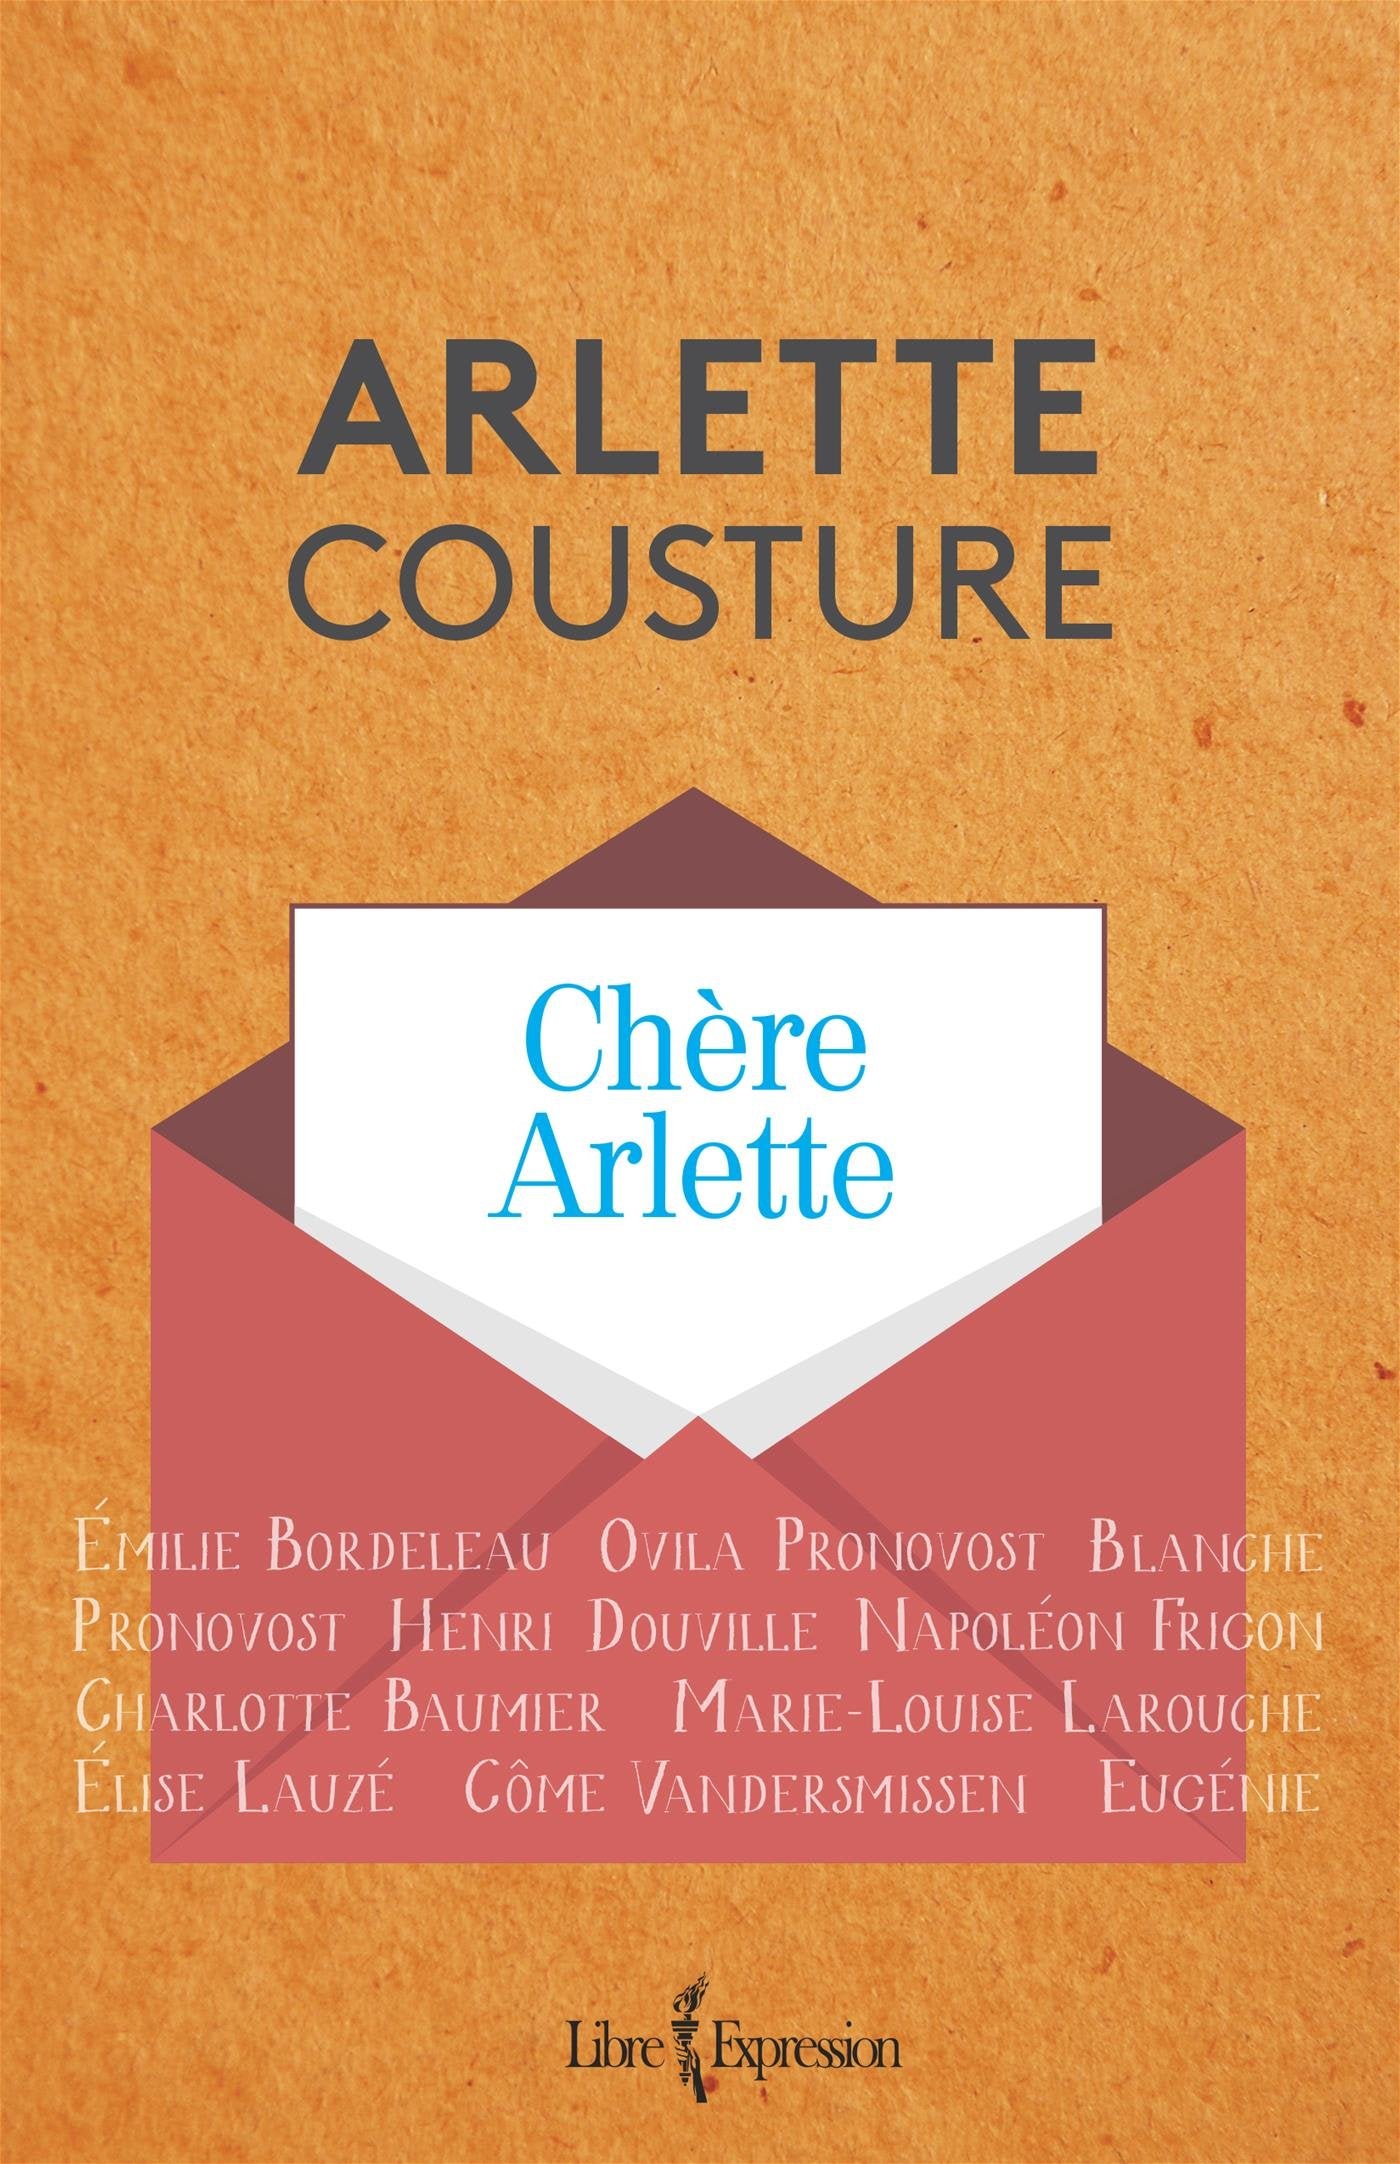 Chère Arlette - Arlette Cousture